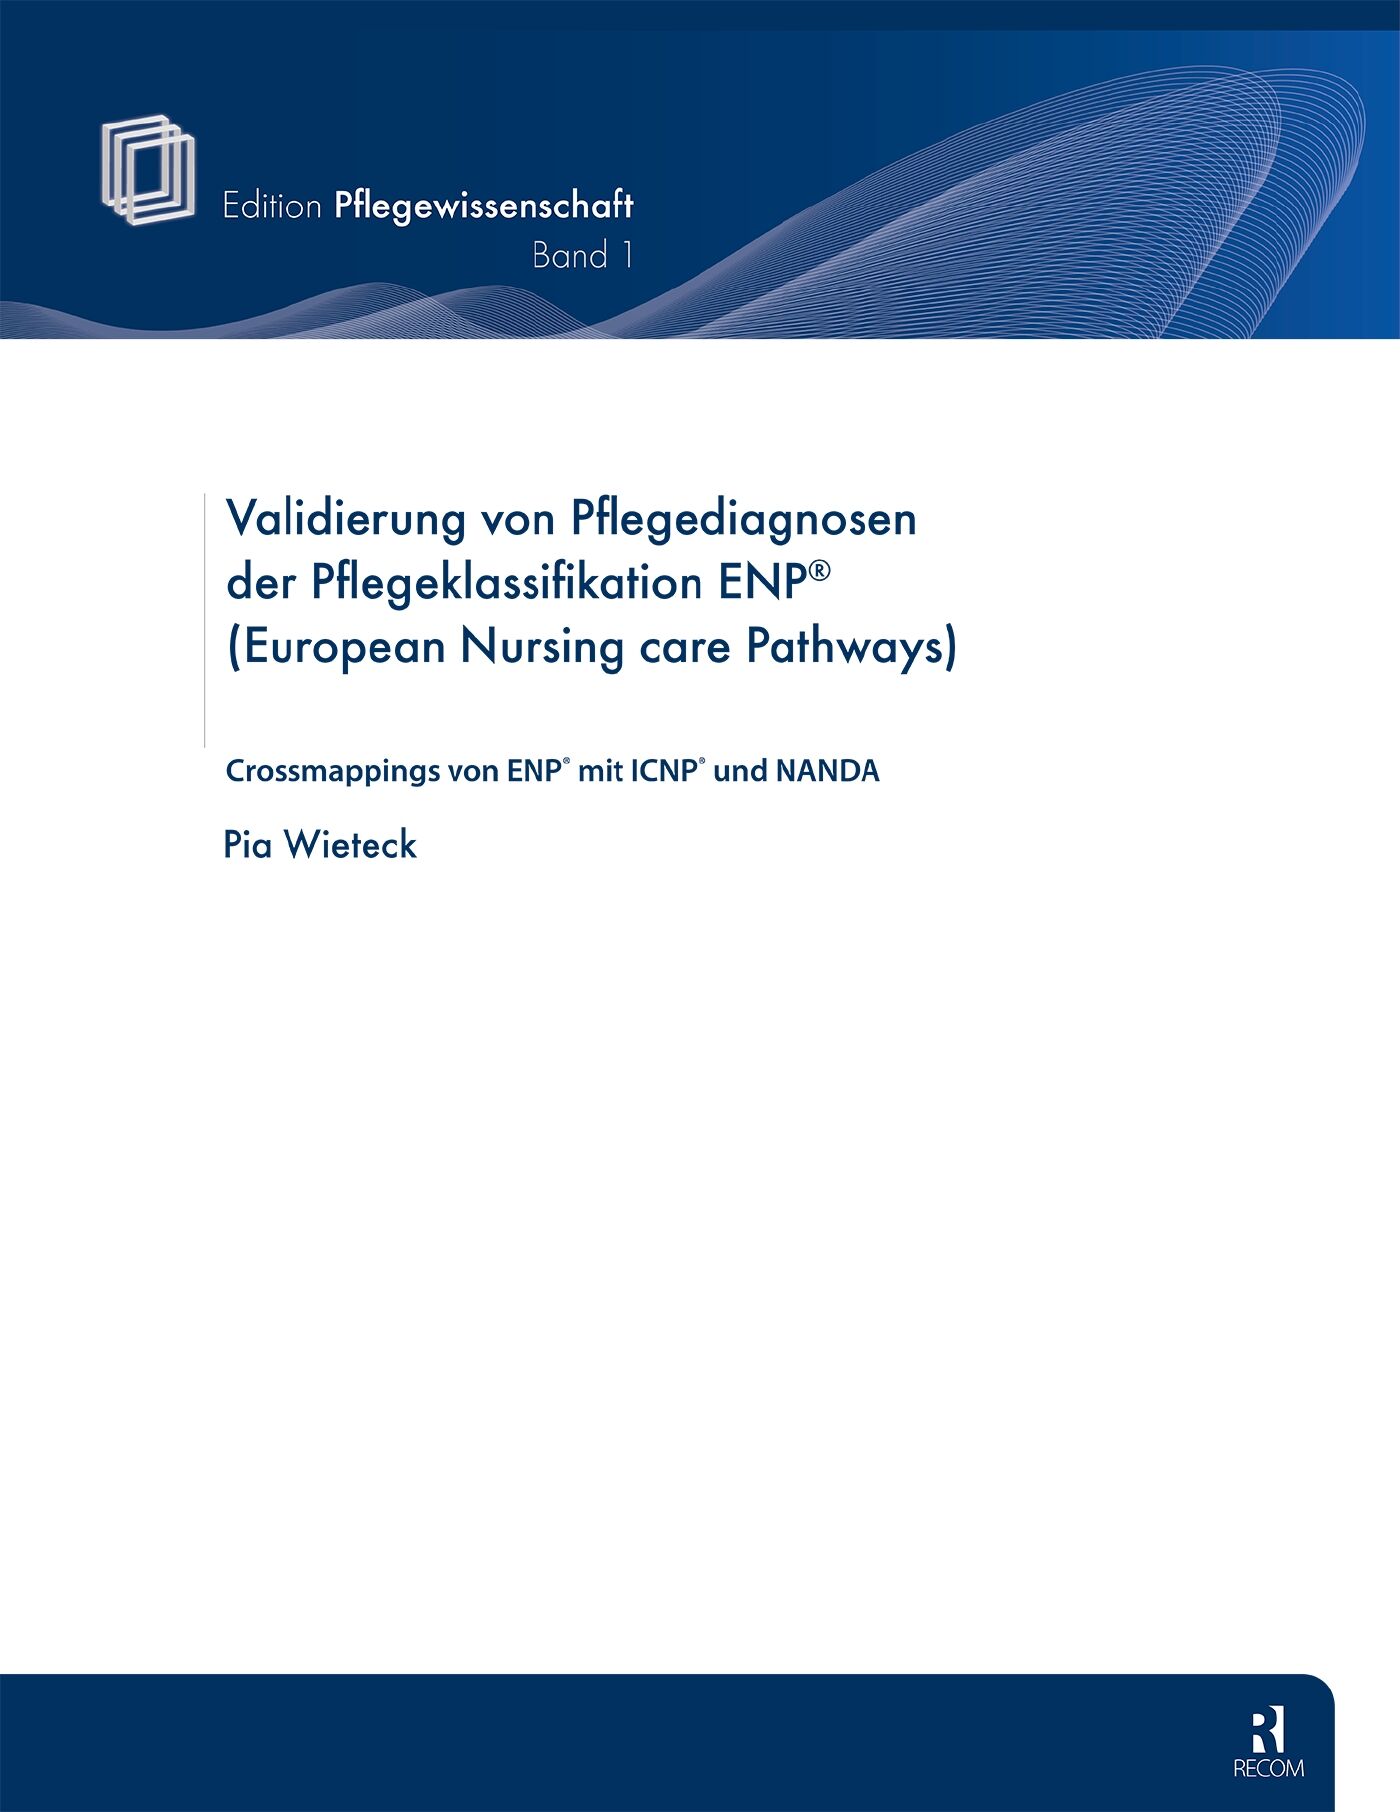 Validierung von Pflegediagnosen der Pflegeklassifikation ENP (European Nursing care Pathways), 9783897521049